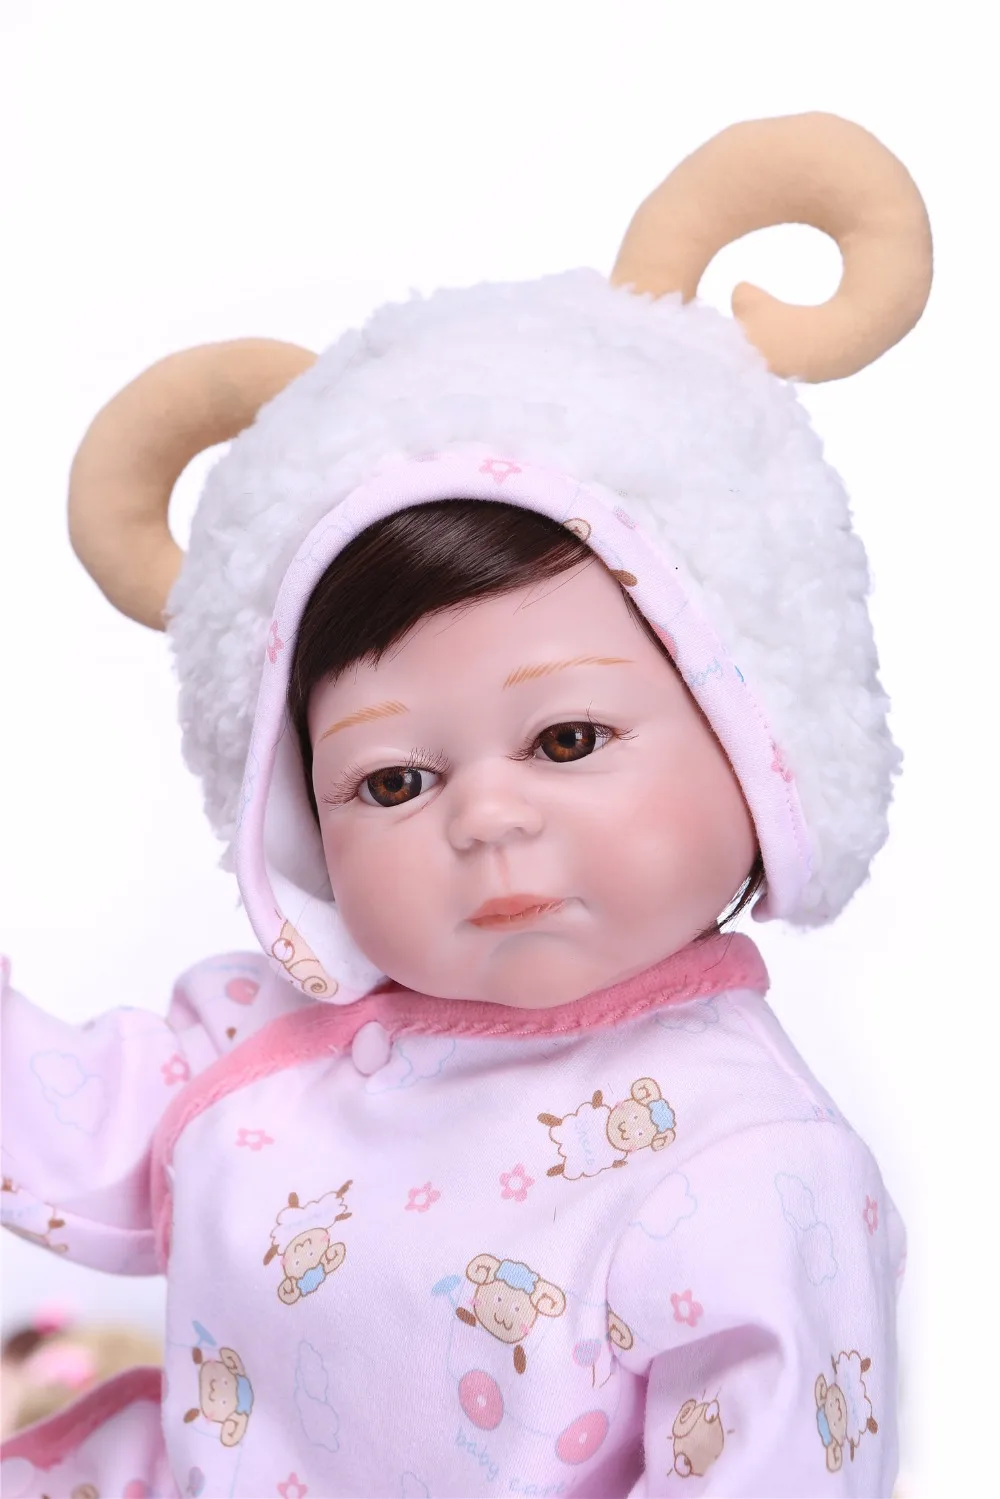 NPK Реалистичного 50 см новорожденных кукла может купаться Полный Силиконовые винил тела куклы реборн для маленькой принцессы Brinquedos